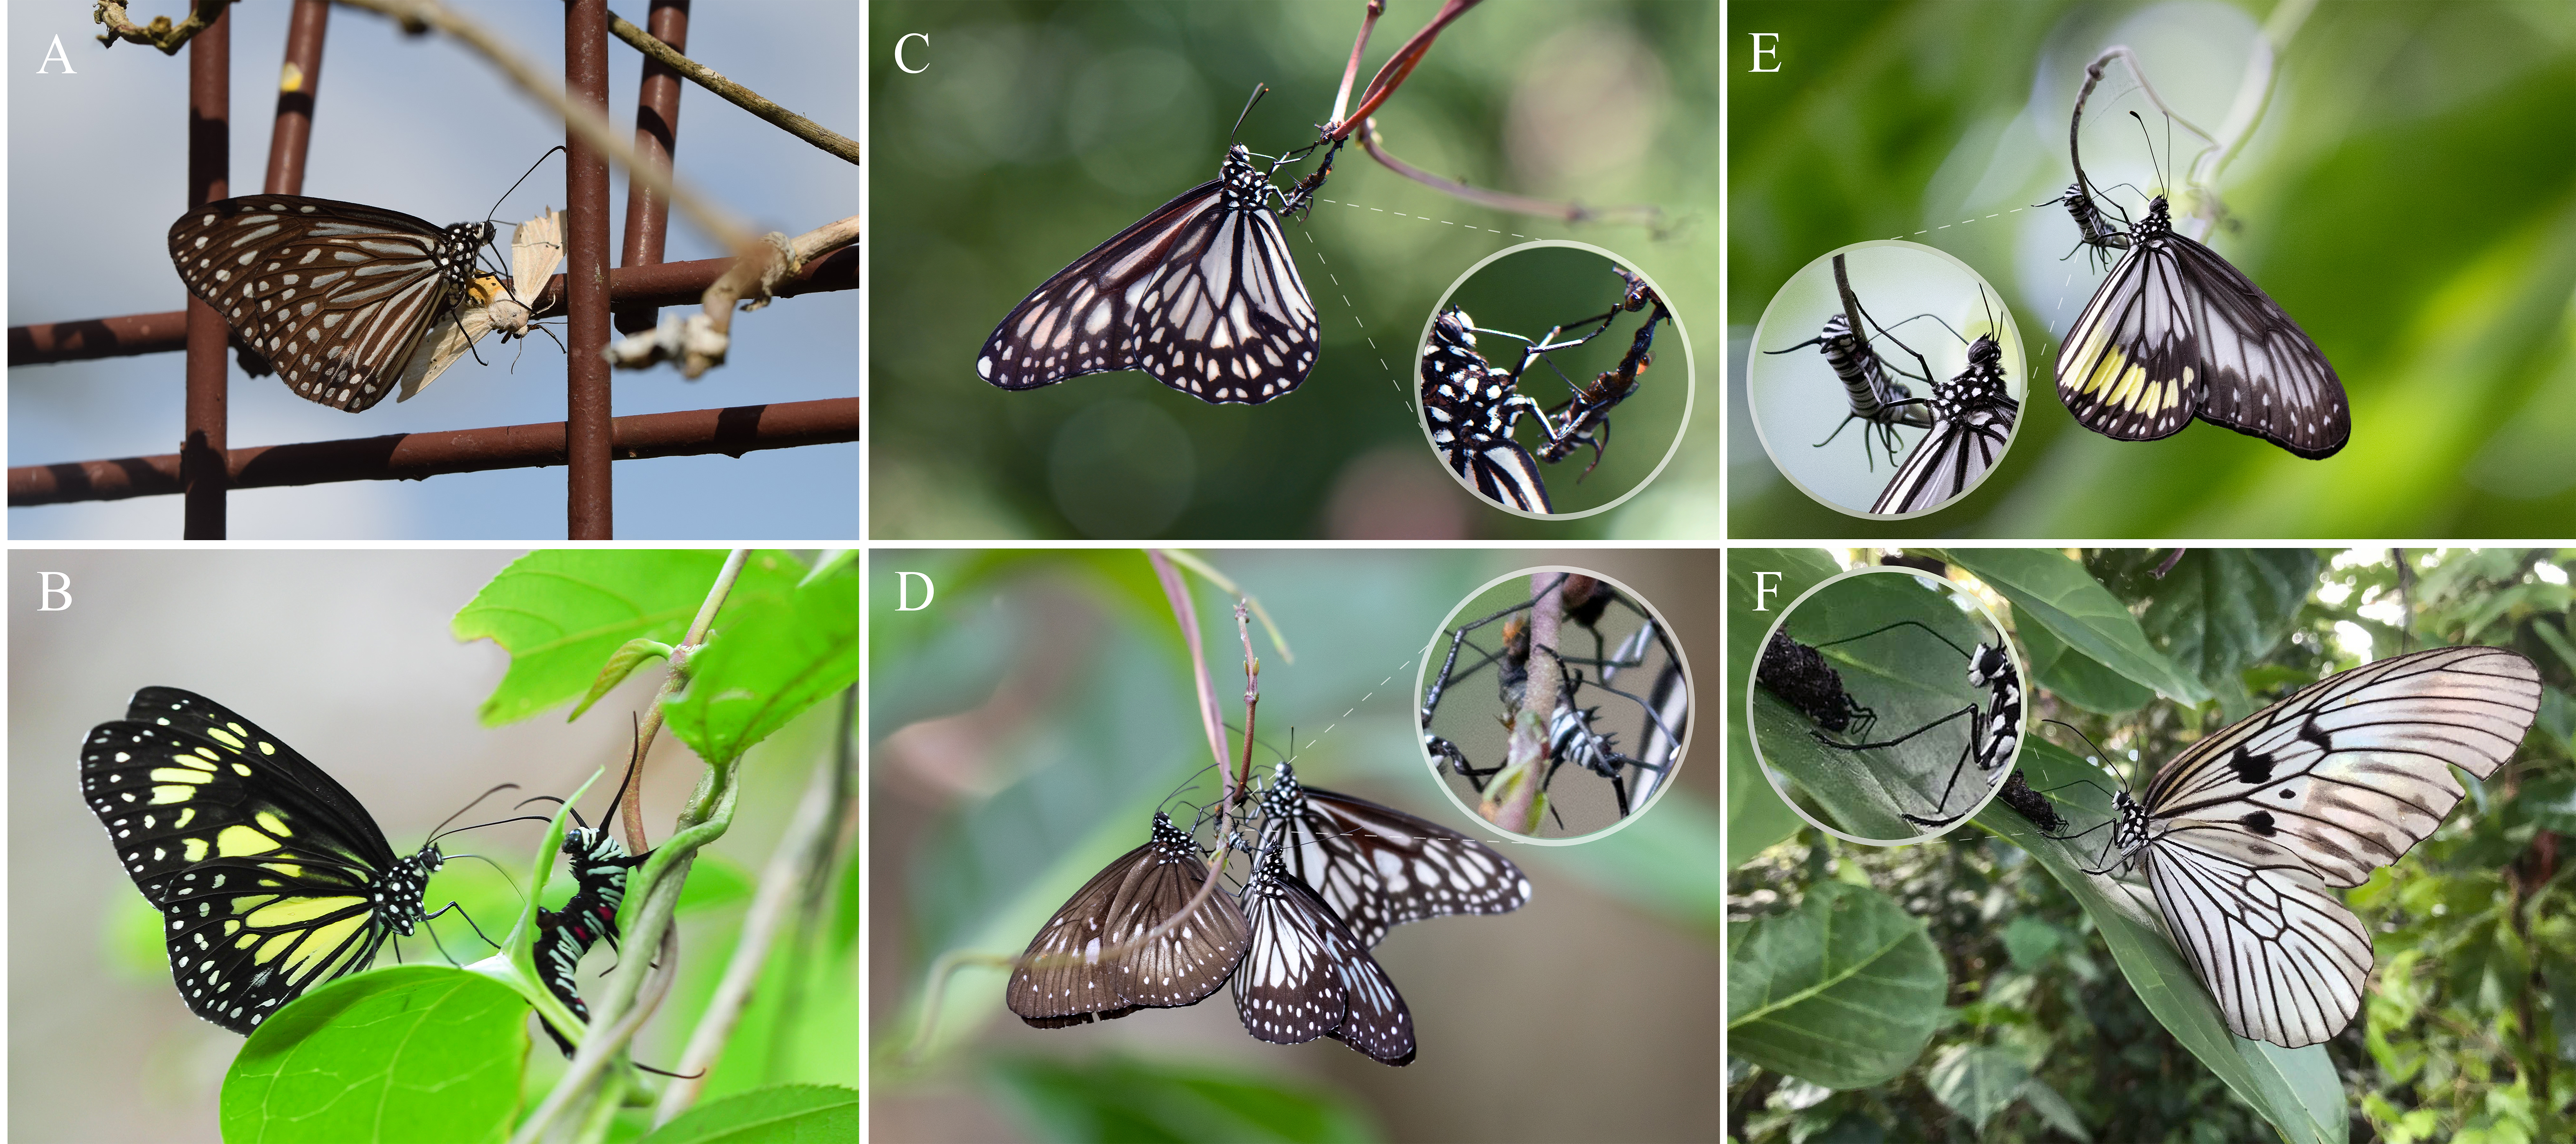 Milkweed butterflies imbibing from dead and living caterpillars. Credit: Tea et. al.